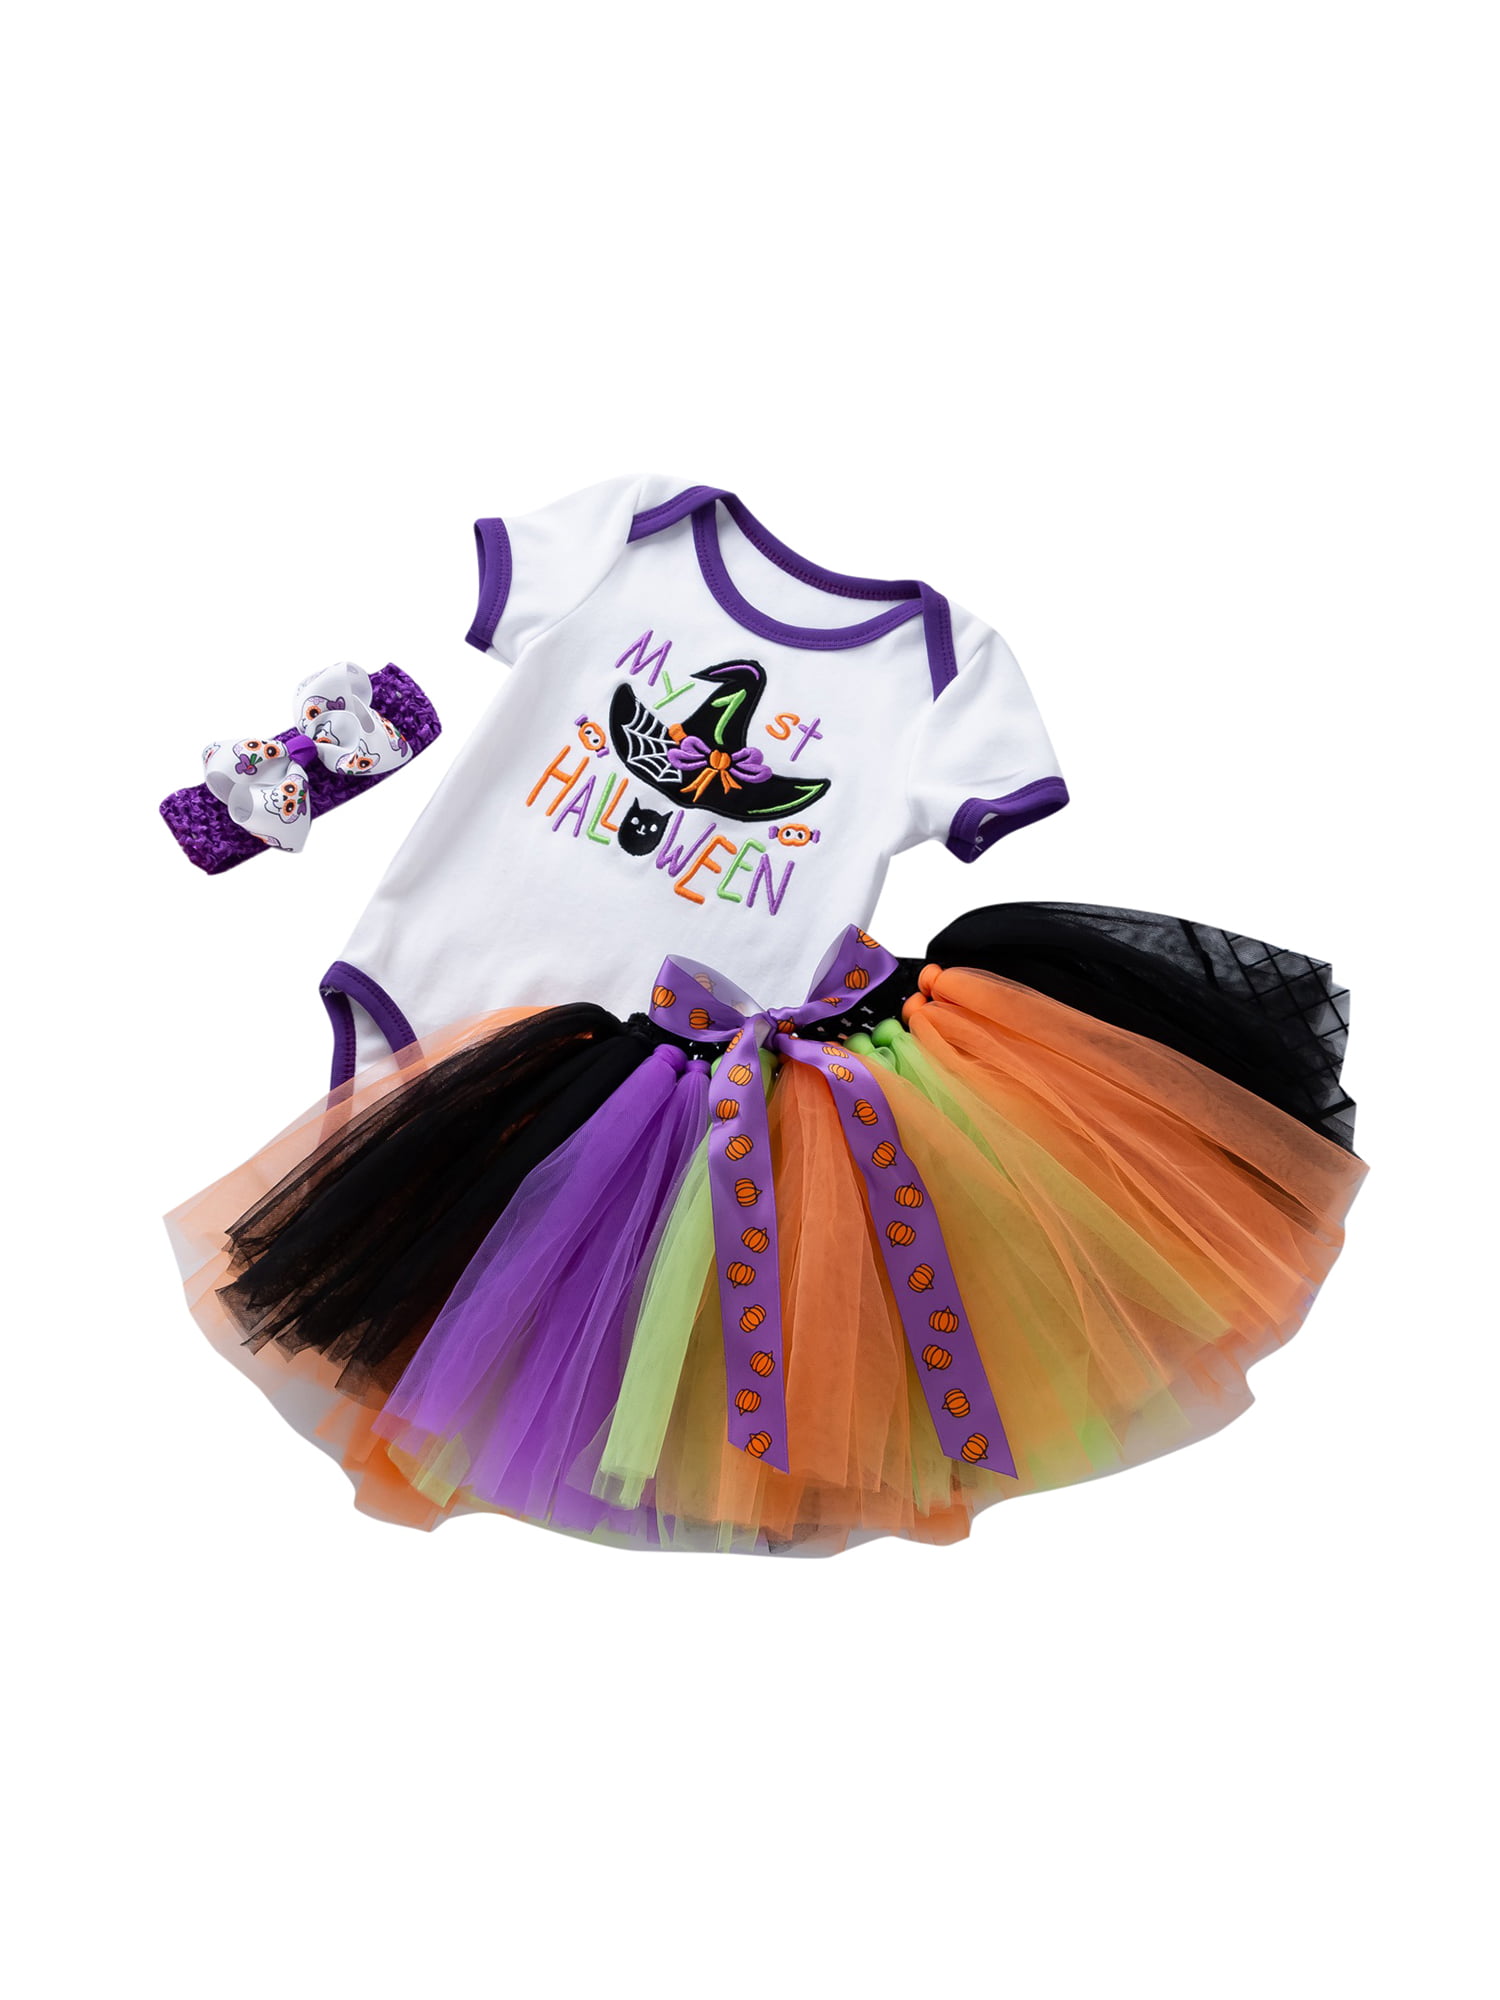 0 to 36 Months Skorts M: 6-12 Months, Purple Slowera Baby Girls Soft Tutu Skirt 